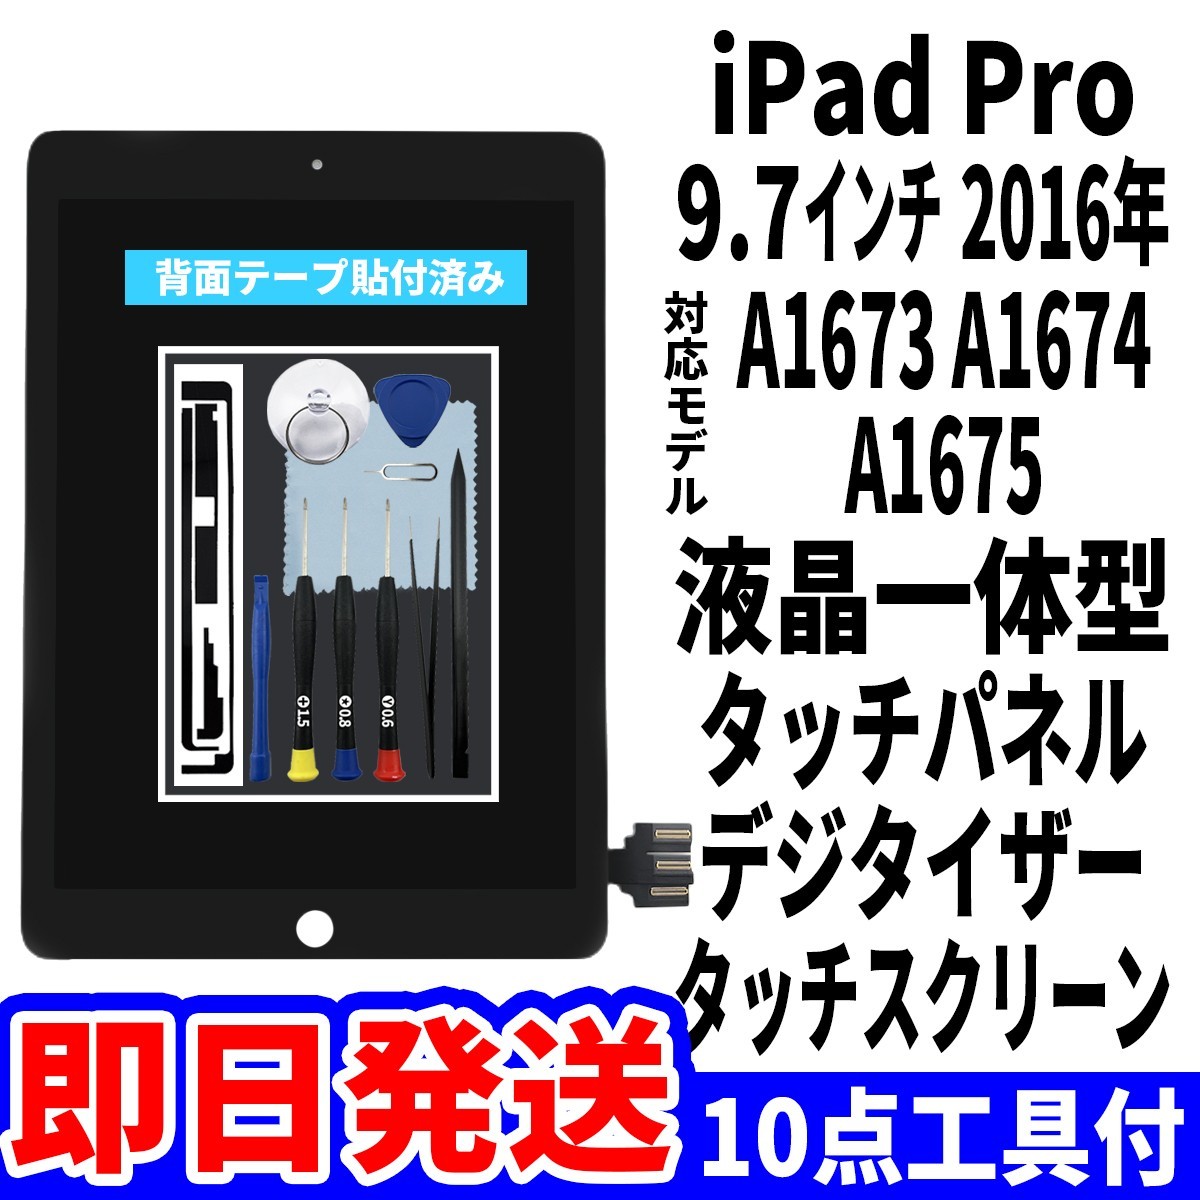 即日発送! iPad Pro9.7 液晶 一体型 A1673 A1674 A1675 フロントパネル 黒 タッチスクリーン交換 デジタイザ修理 画面 ガラス 工具付